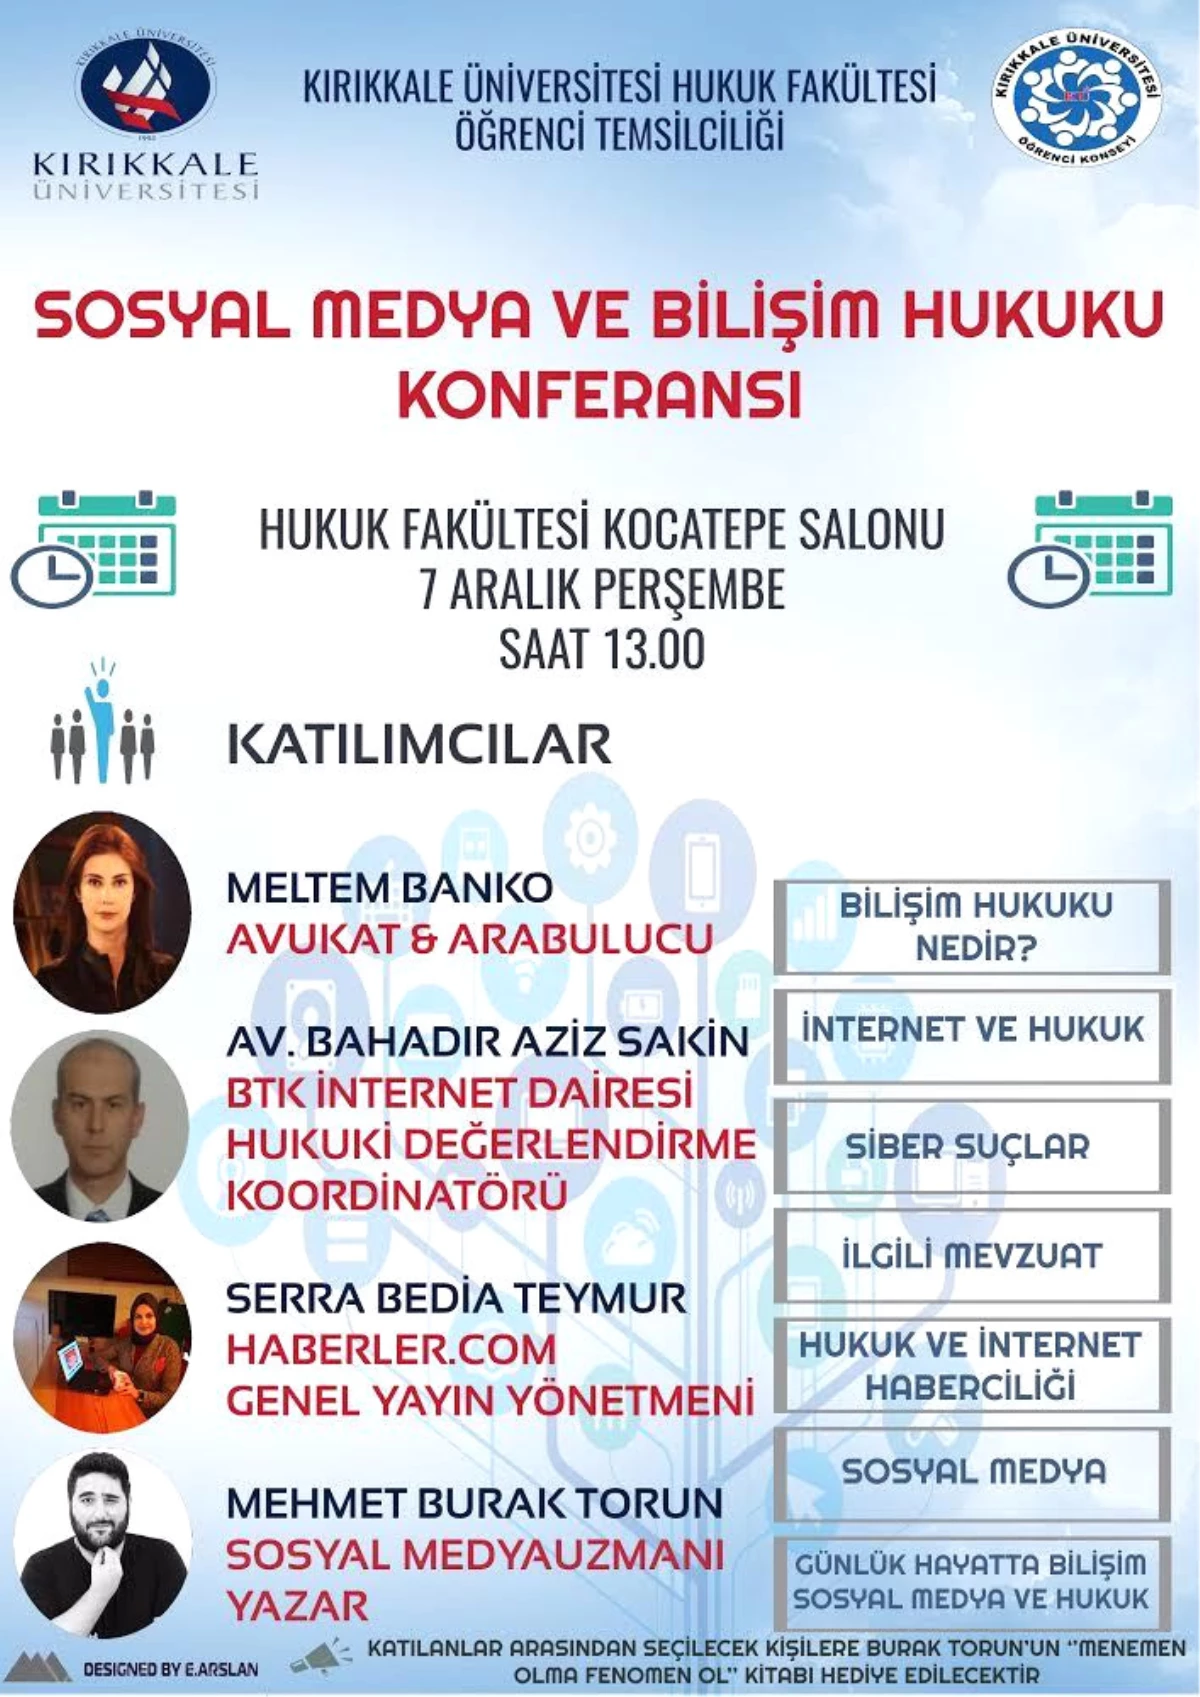 Kırıkkale Üniversitesinde Sosyal Medya ve Bilişim Hukuku Konferansı